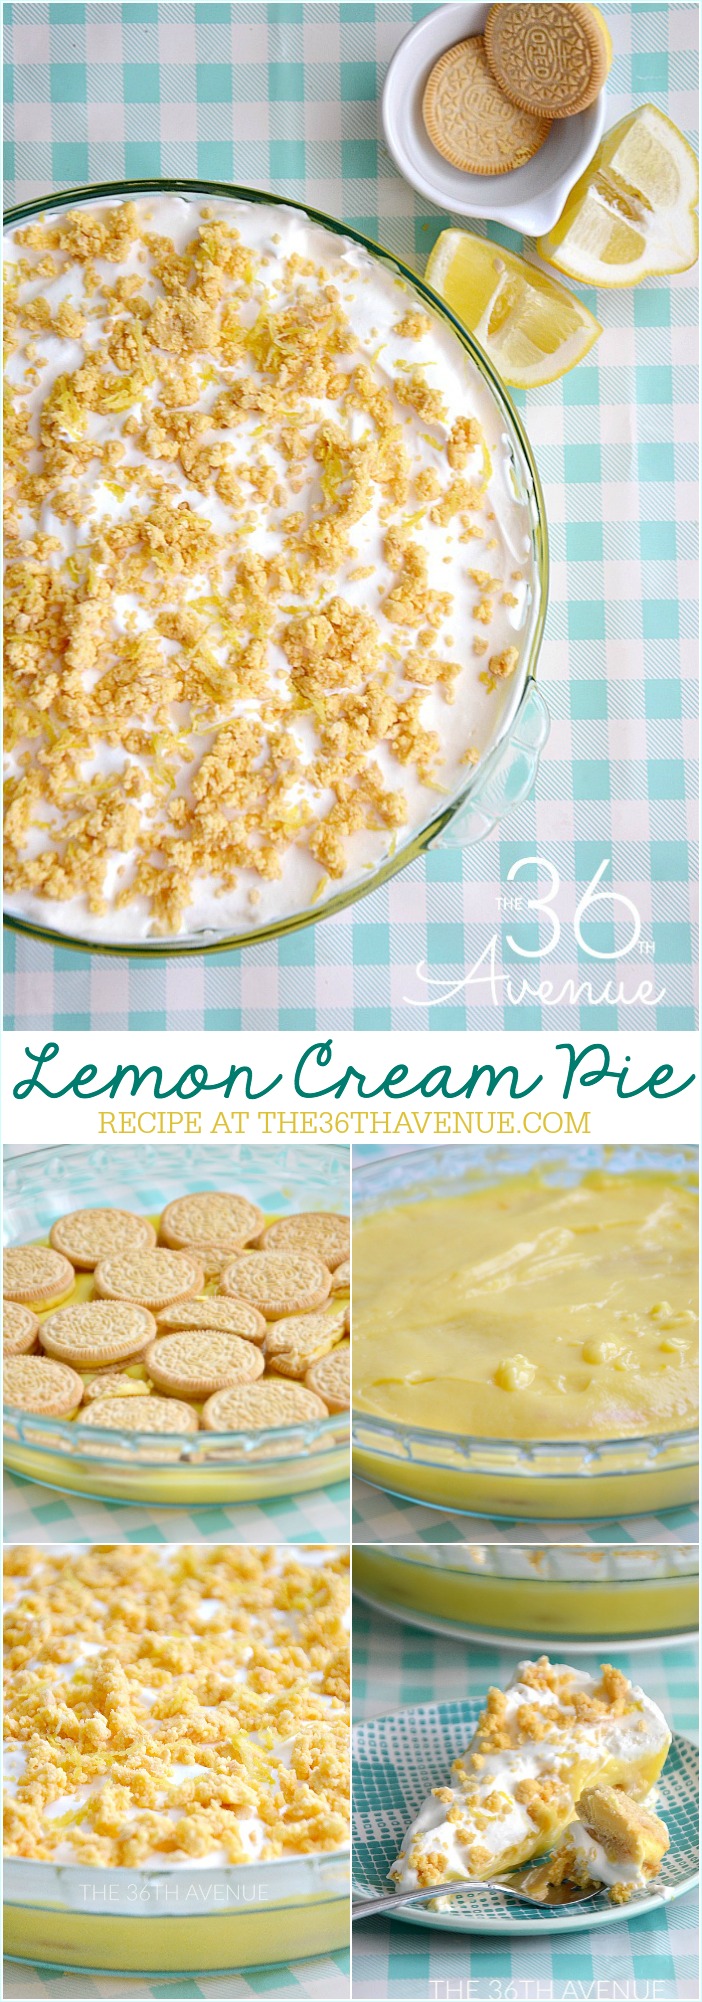 Lemon Cream Pie Recipe 1 the36thavenue.com